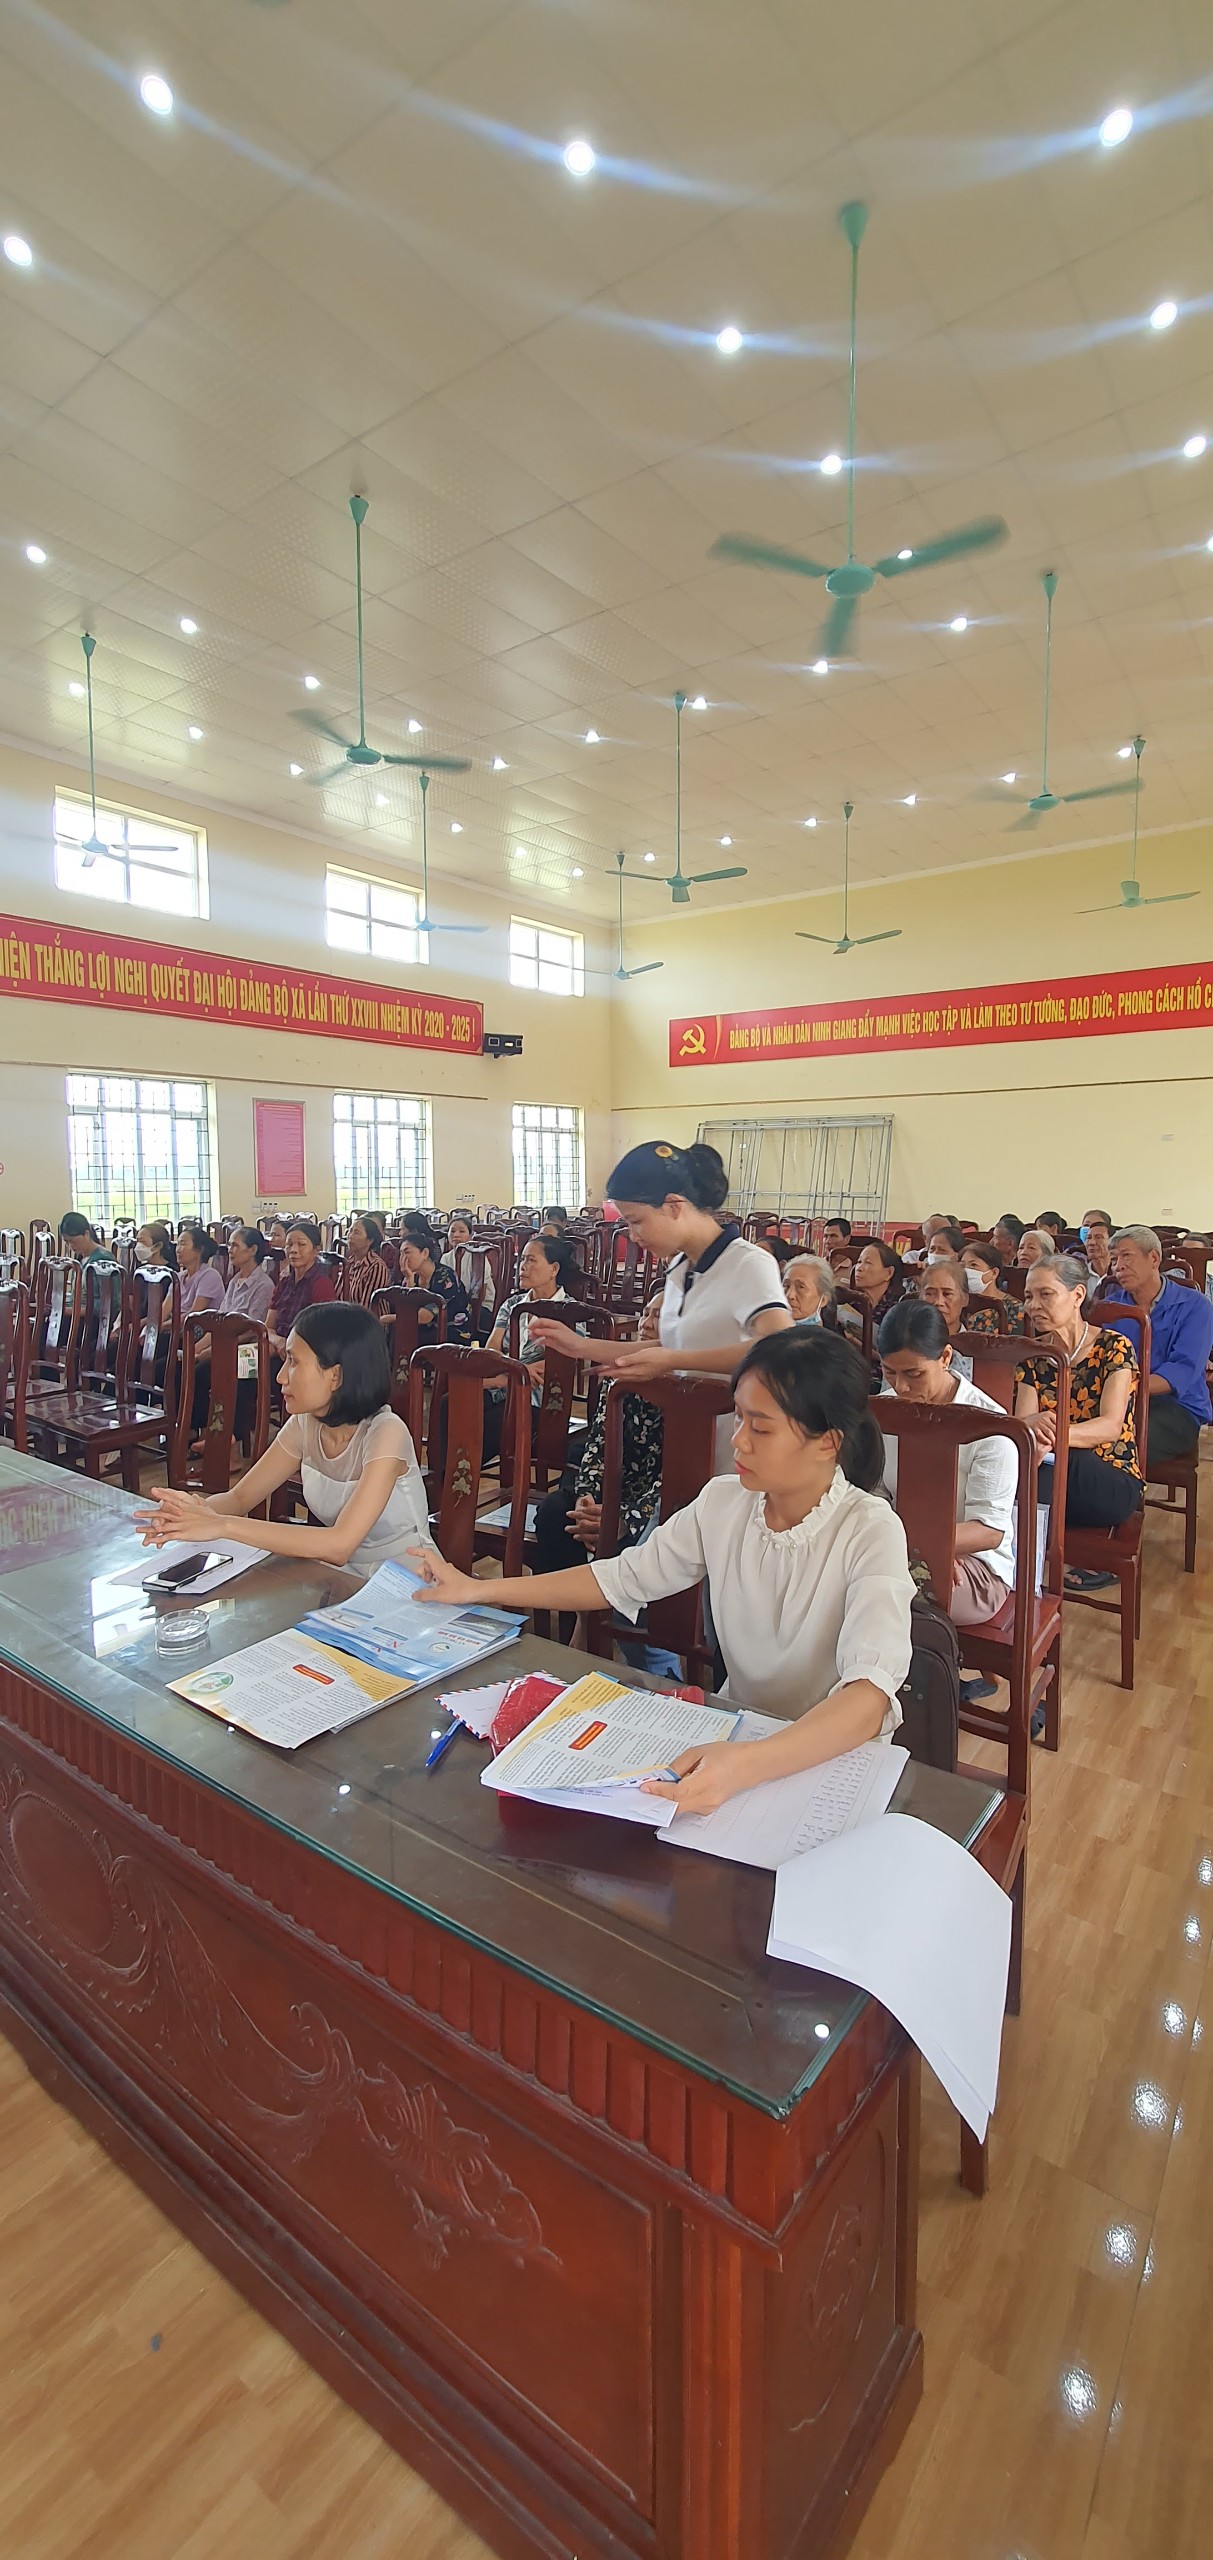 UBND xã phối hợp với Trung tâm nông nghiệp công nghệ cao & xúc tiến thương mại tỉnh Ninh Bình tổ chức buổi tập huấn về kỹ thuật nuôi trồng thủy sản cho cán bộ và hội viên nông dân trong xã.